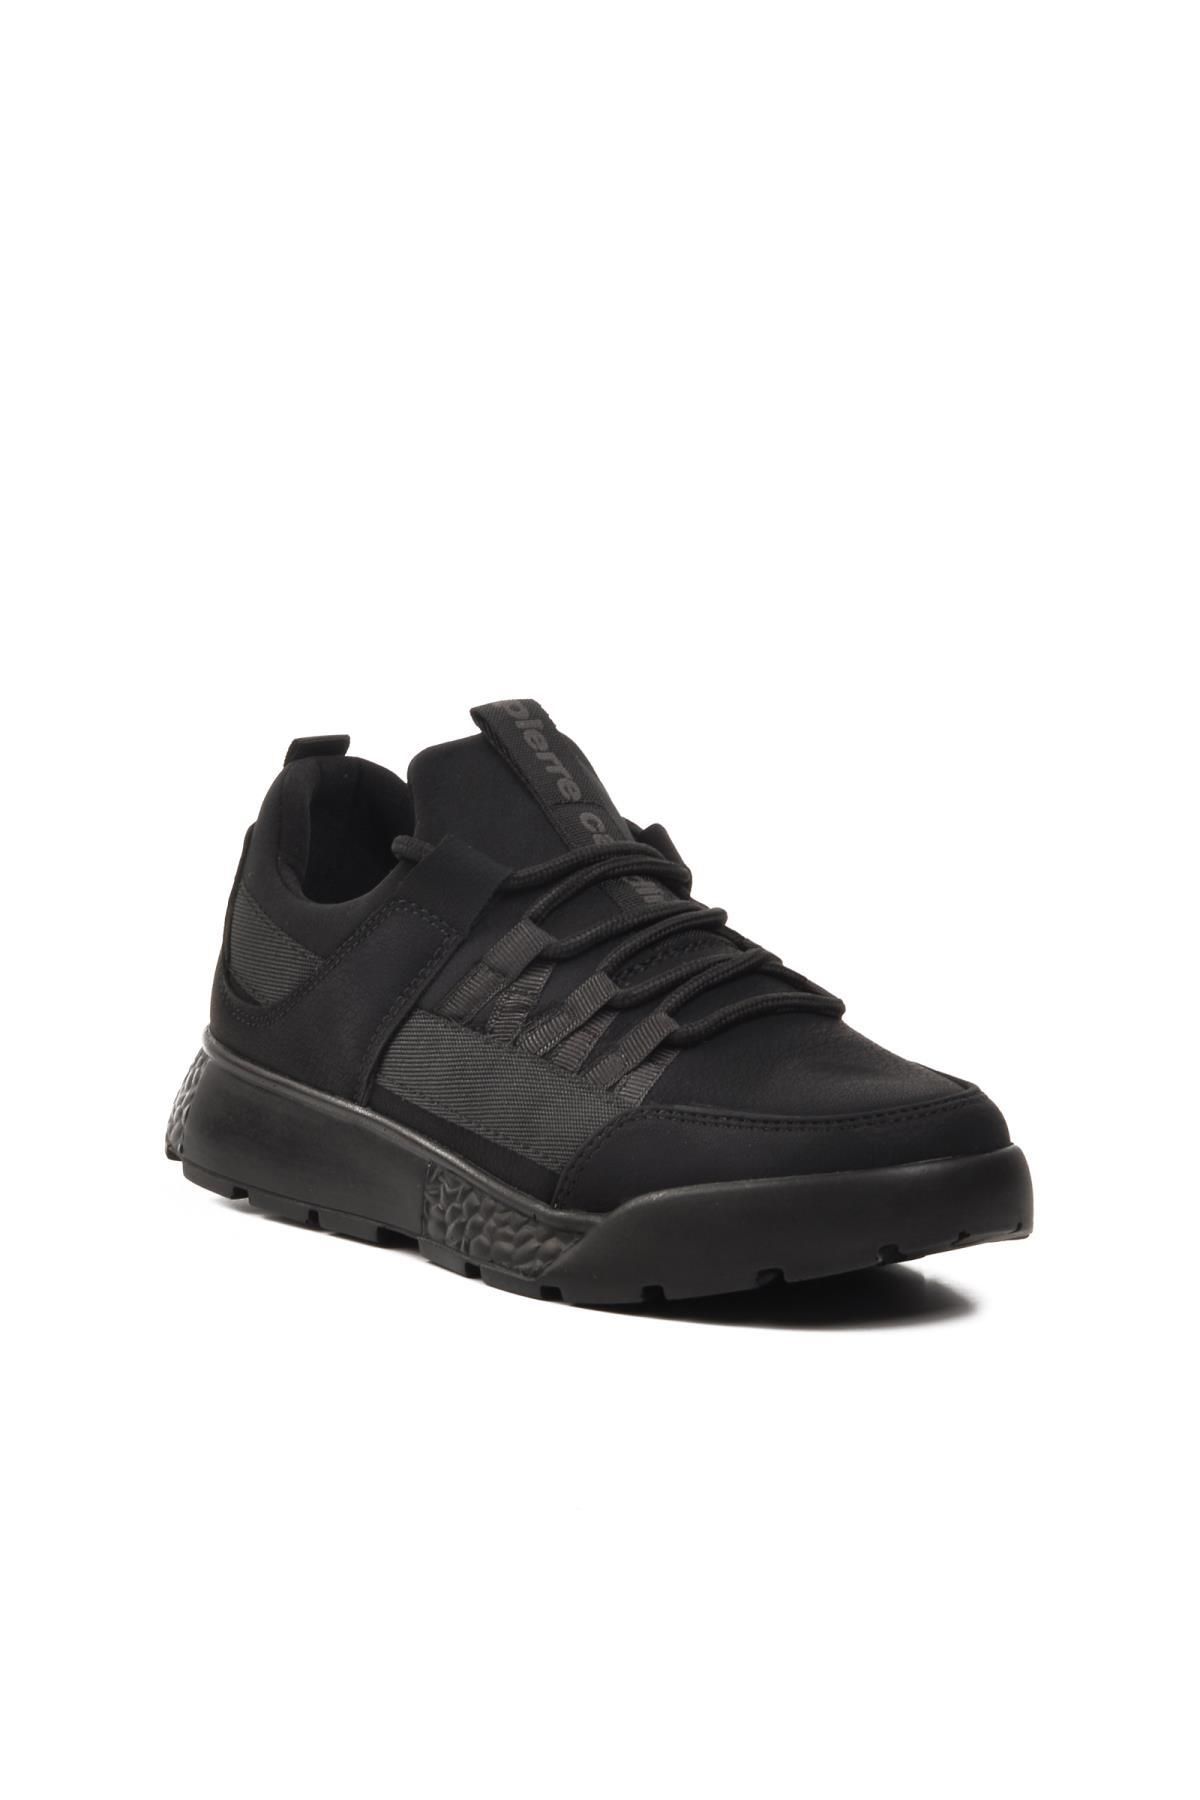 Pierre Cardin 31415 Siyah Süs Bağcıklı Unisex Sneaker